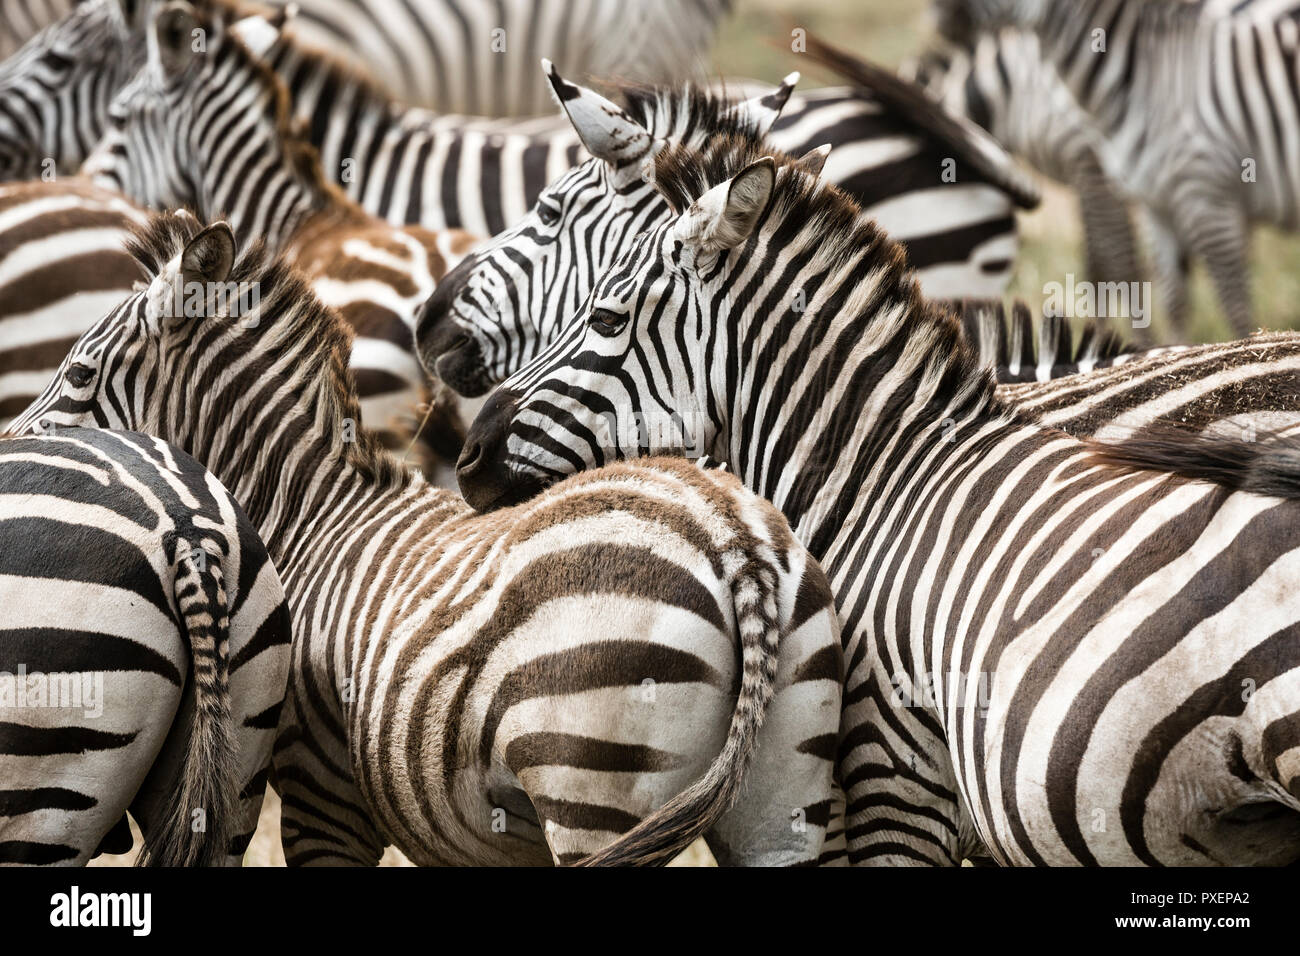 Zebra harem at Ngorongoro Crater in Tanzania Stock Photo